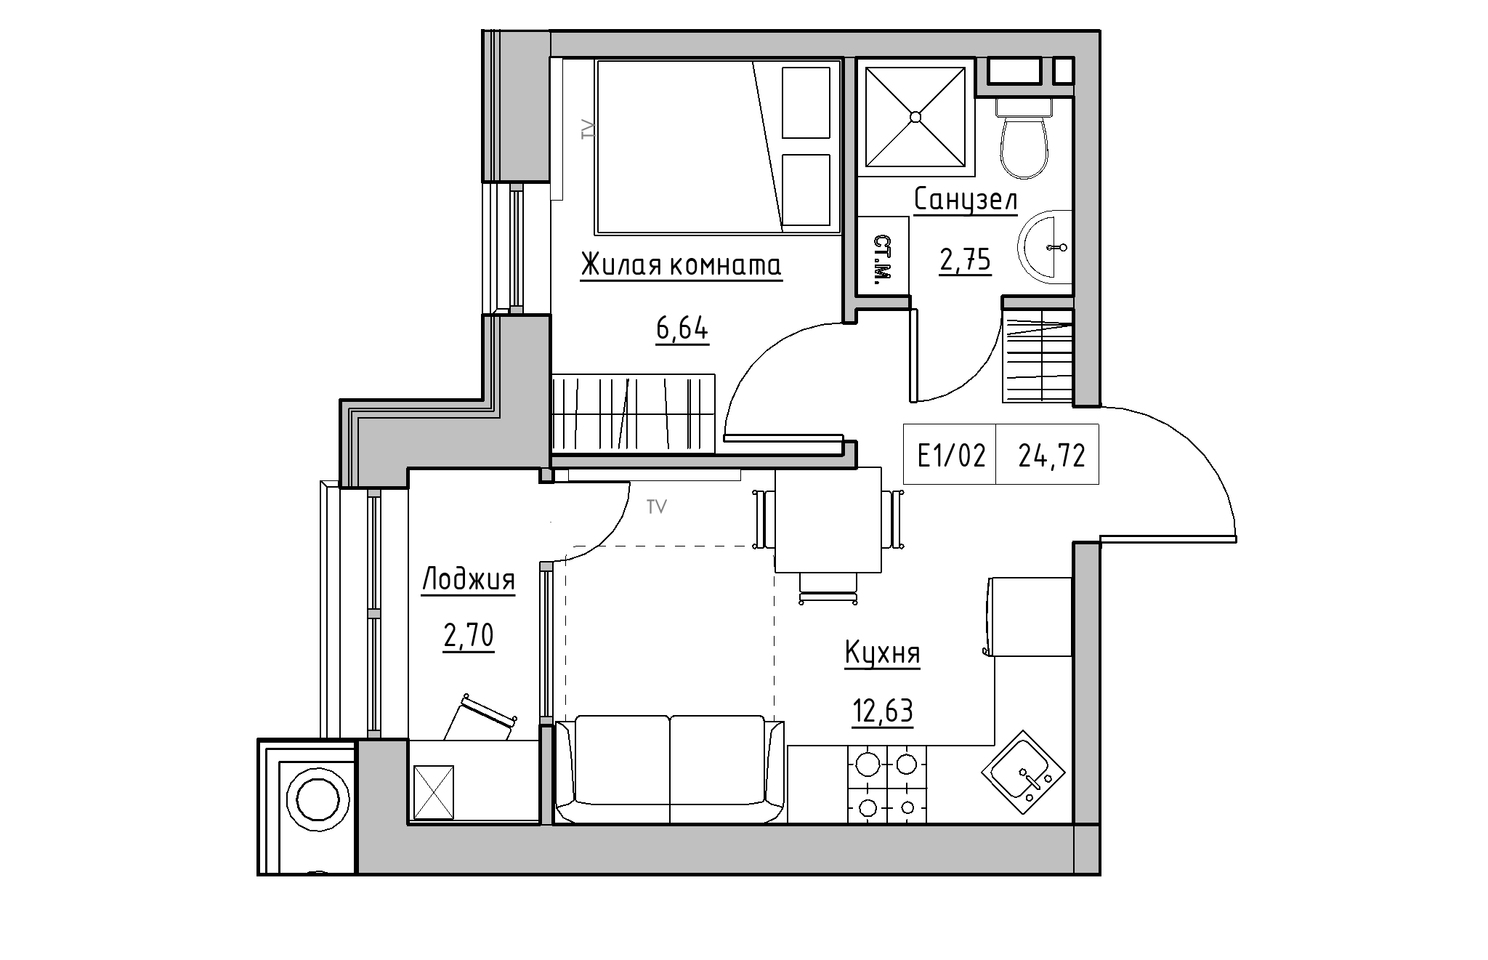 Планировка 1-к квартира площей 24.72м2, KS-010-04/0013.